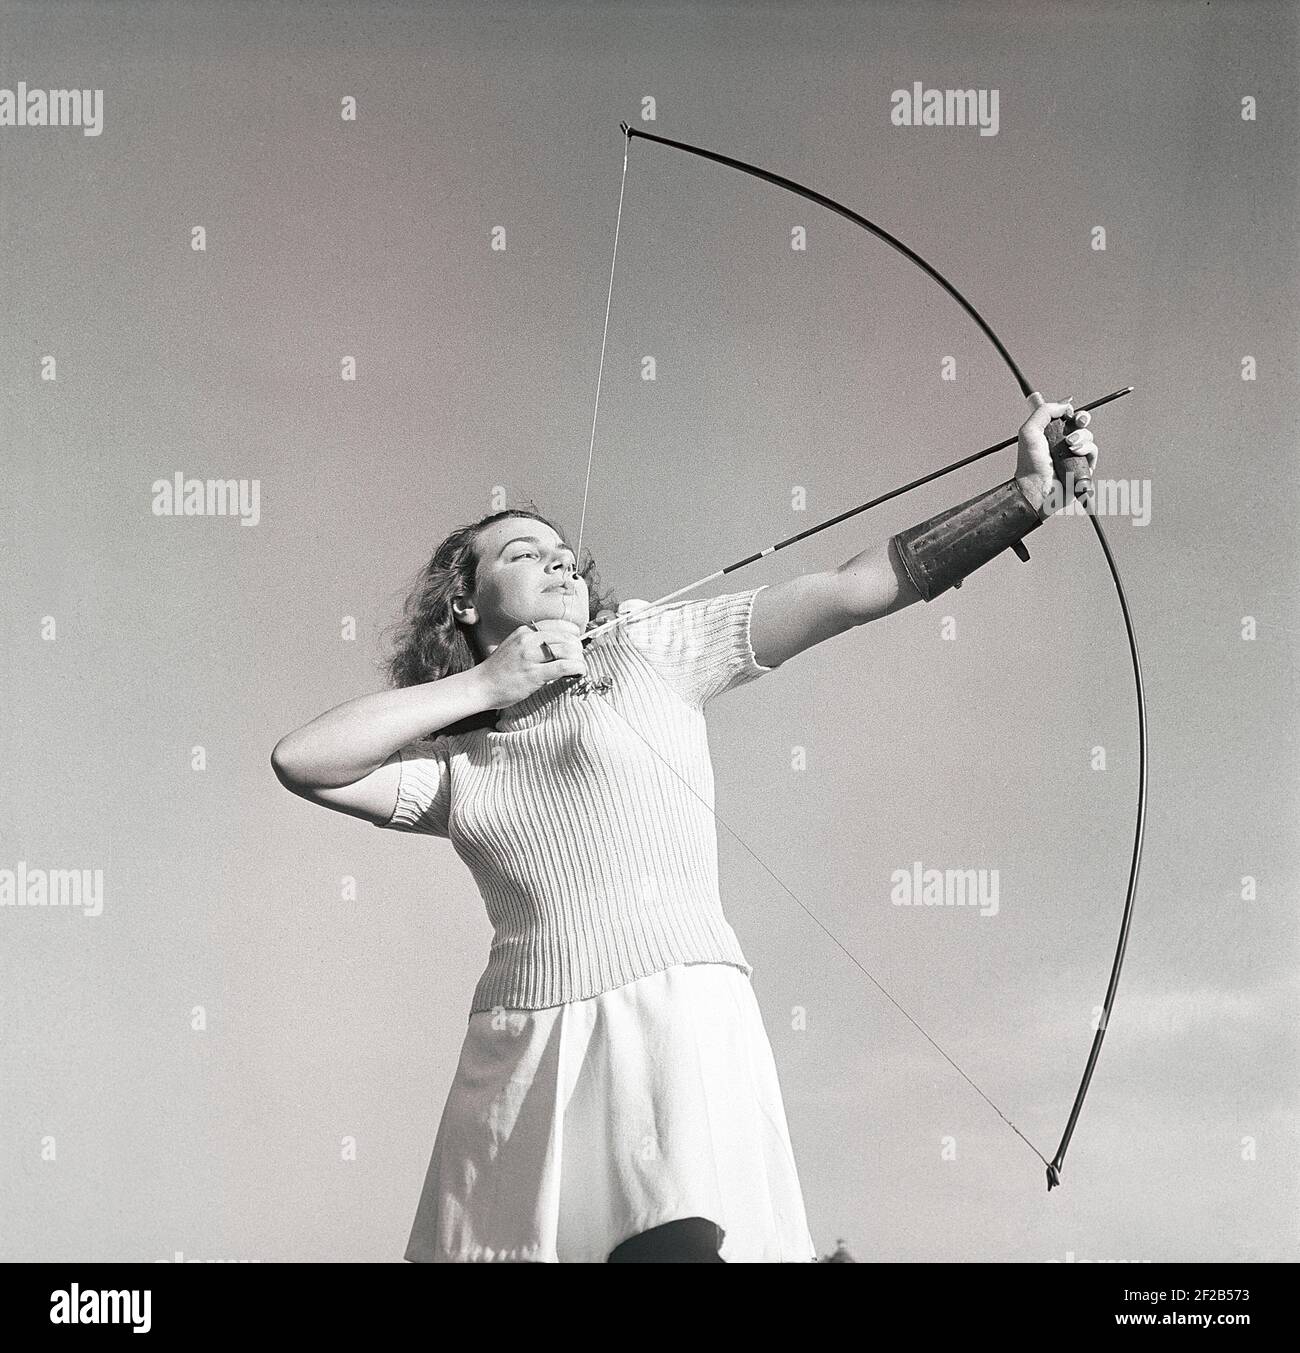 Tiro con l'arco negli anni '40. La giovane attrice svedese Mimi Nelson con un arco e una freccia, che punta a qualcosa di pronto a scattare il colpo. È vestita con il tipico jumper degli anni '40 e una gonna. Svezia 1947 Rif AD7-3 Foto Stock